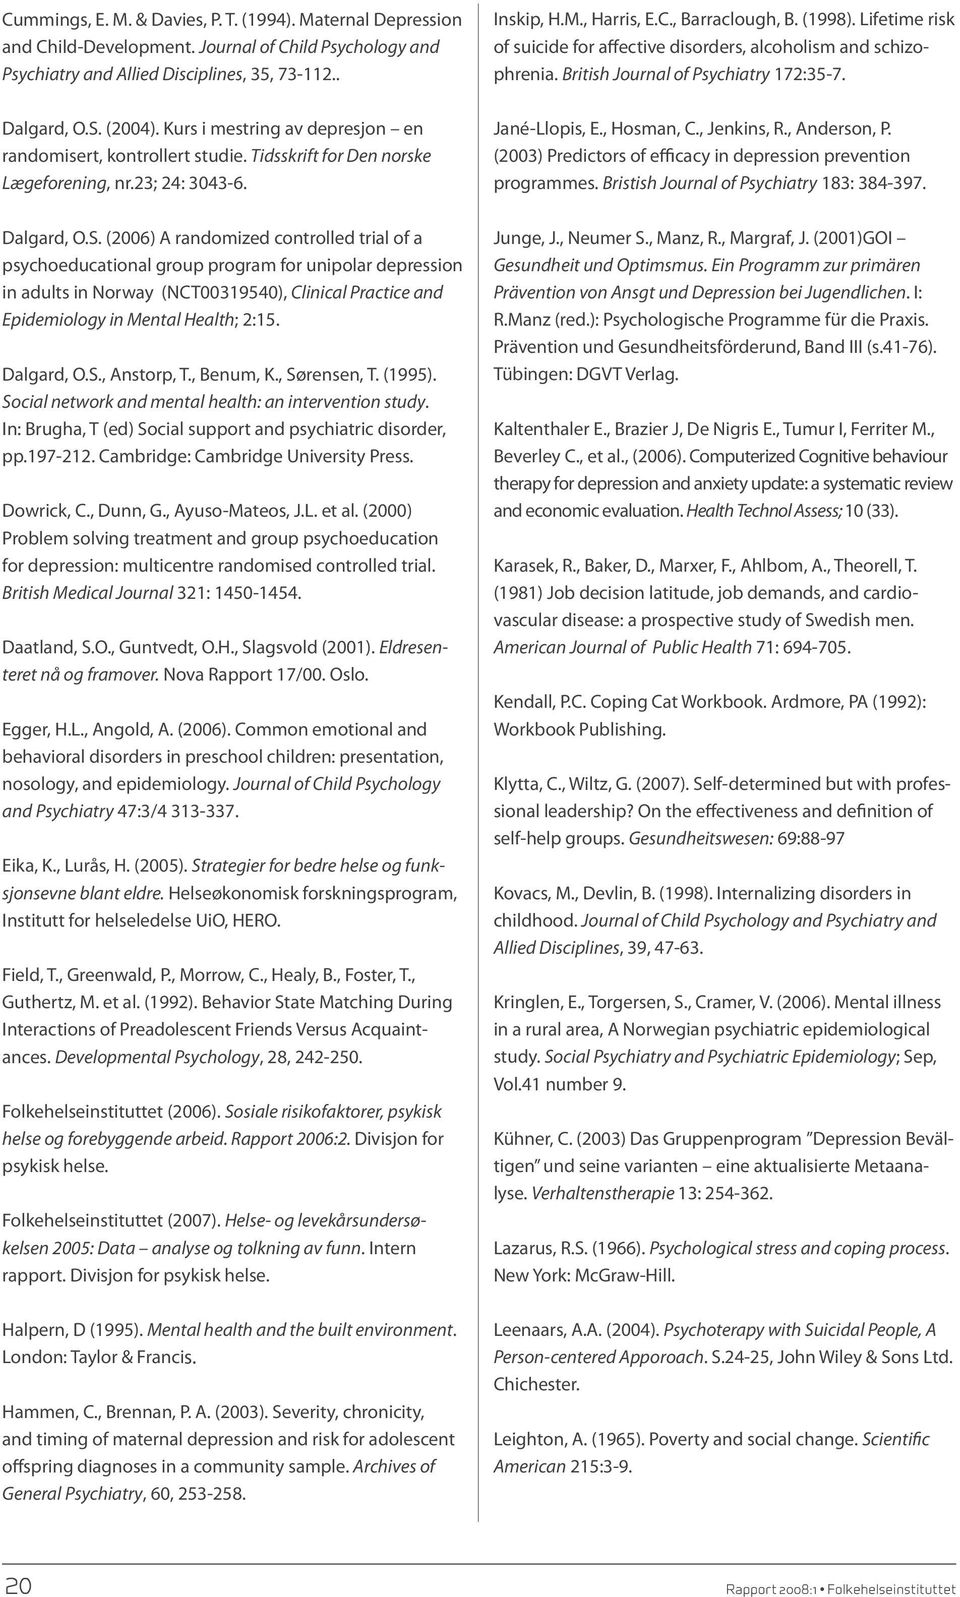 Kurs i mestring av depresjon en randomisert, kontrollert studie. Tidsskrift for Den norske Lægeforening, nr.23; 24: 3043-6. Jané-Llopis, E., Hosman, C., Jenkins, R., Anderson, P.